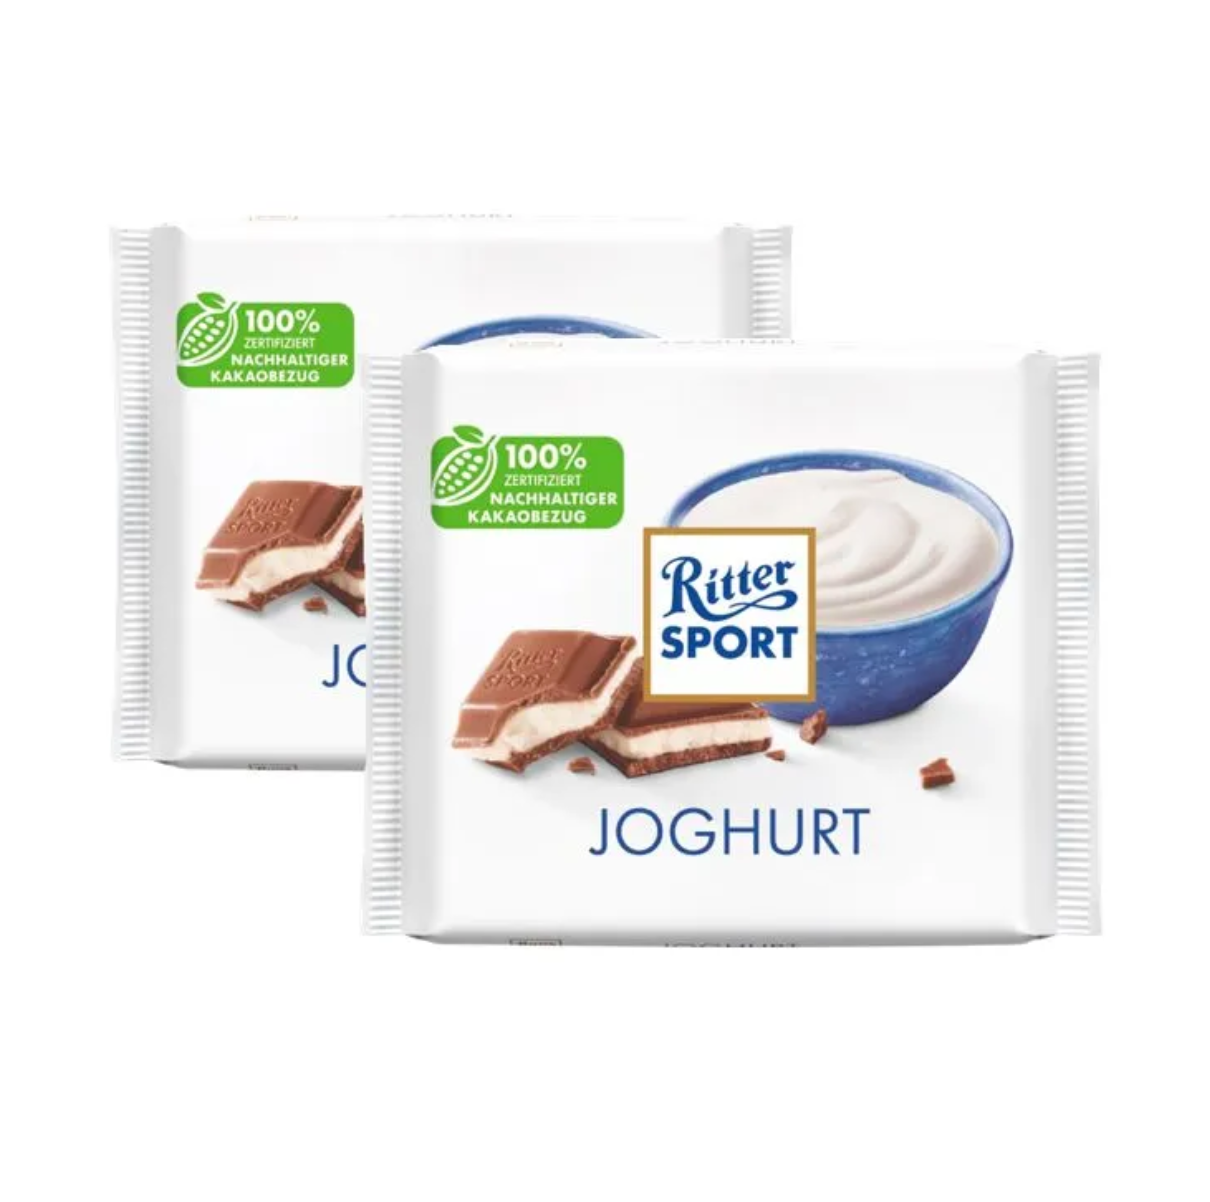 Ritter Sport Joghurt молочный шоколад с йогуртовой начинкой / Ritter Sport йогурт/ Риттер спорт 100г (2 шт)